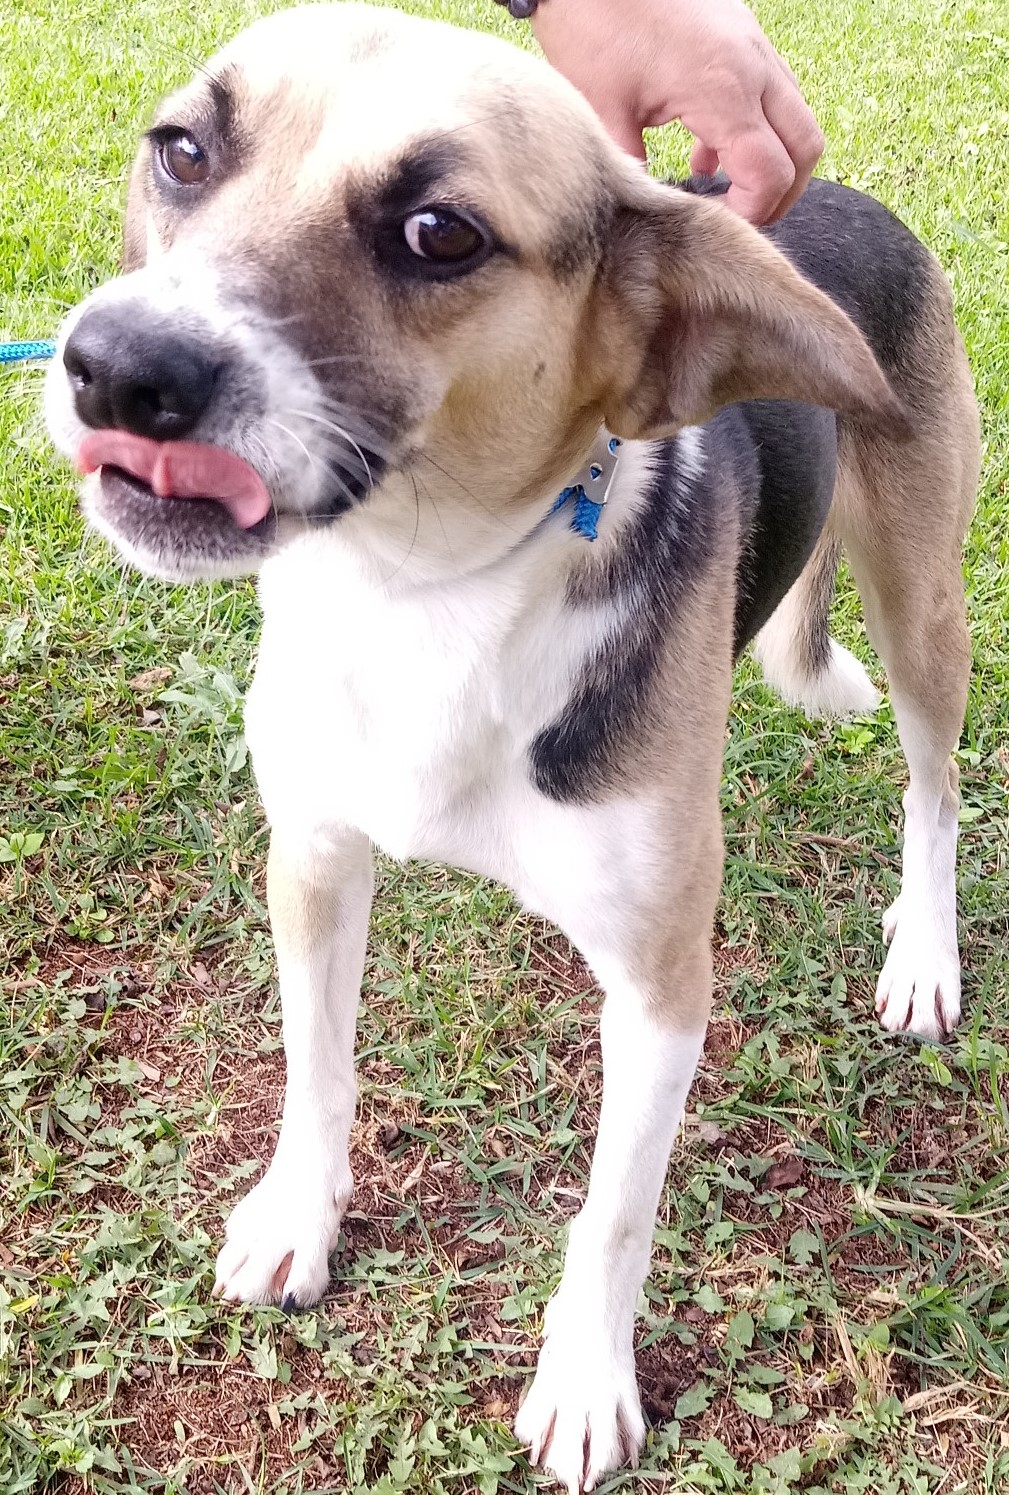 #PraCegoVer: Fotografia do cachorrinho Speed. Ele é branco, tem manchas nas cores marrom e preto. Ele está com a língua para fora, e olha fixamente para a câmera.